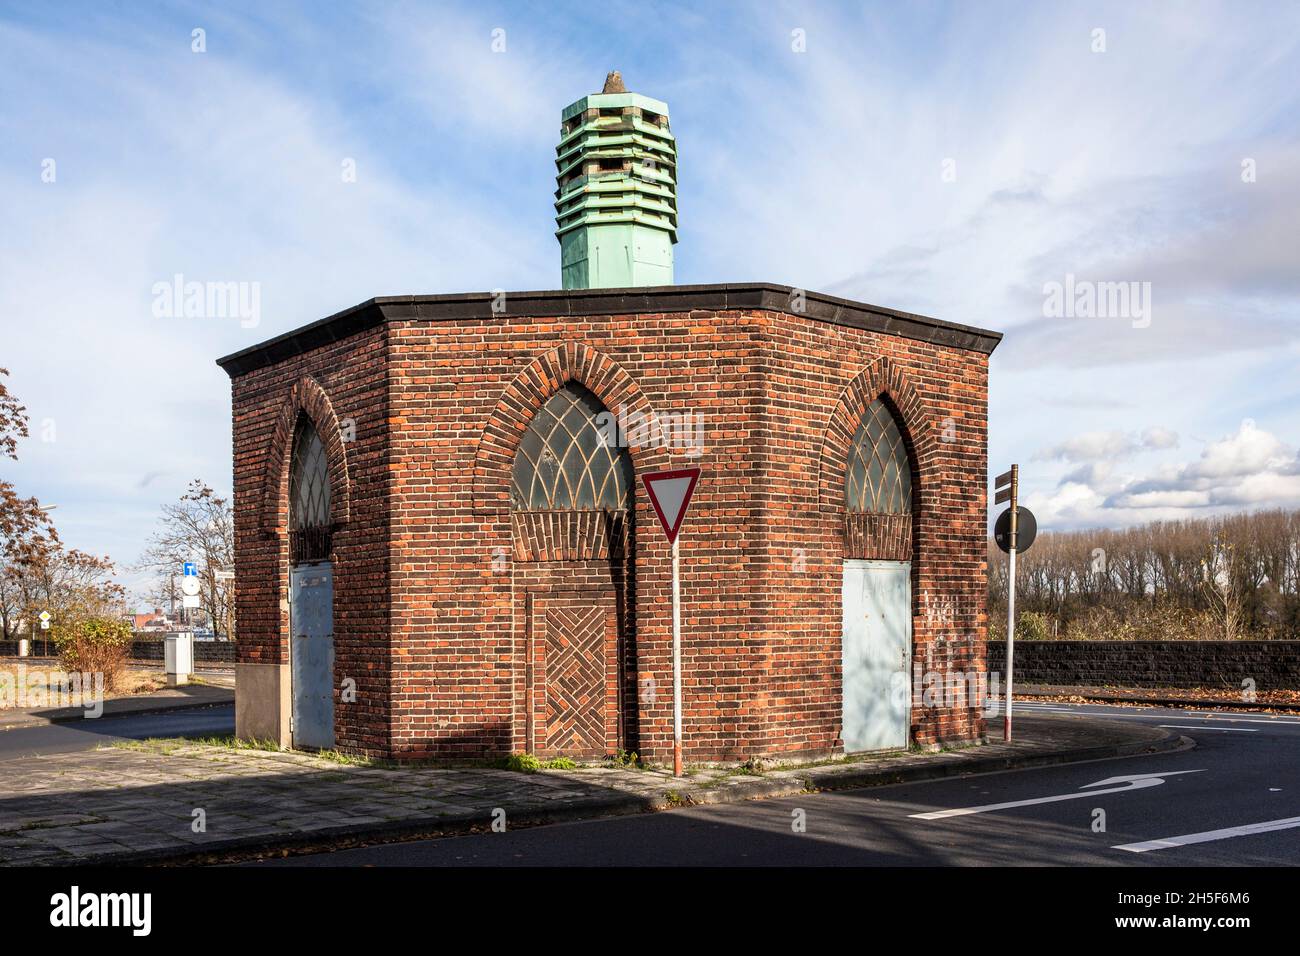 Station de transformation expressionniste octogonale construite en 1928 sur la rue Geestemuender dans le quartier Niehl de Cologne, Allemagne. Achteckige, expressionnis Banque D'Images